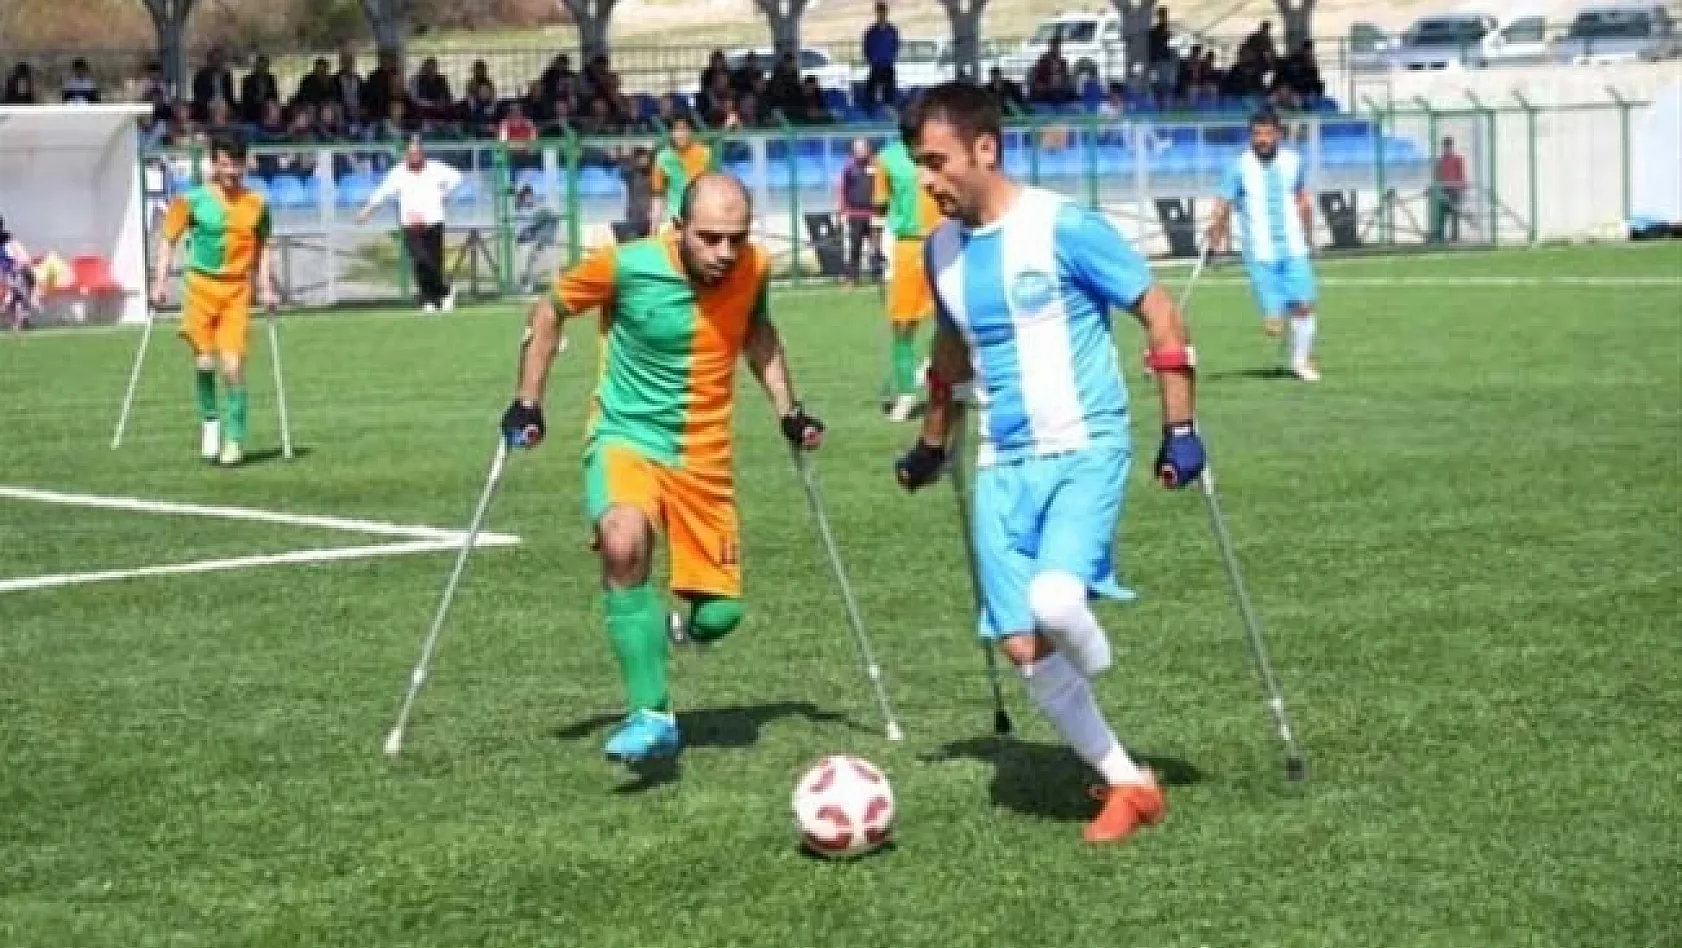 Büyükşehir Belediyesi ampute takımı Osmanlı engelliler ile karşılaşacak 